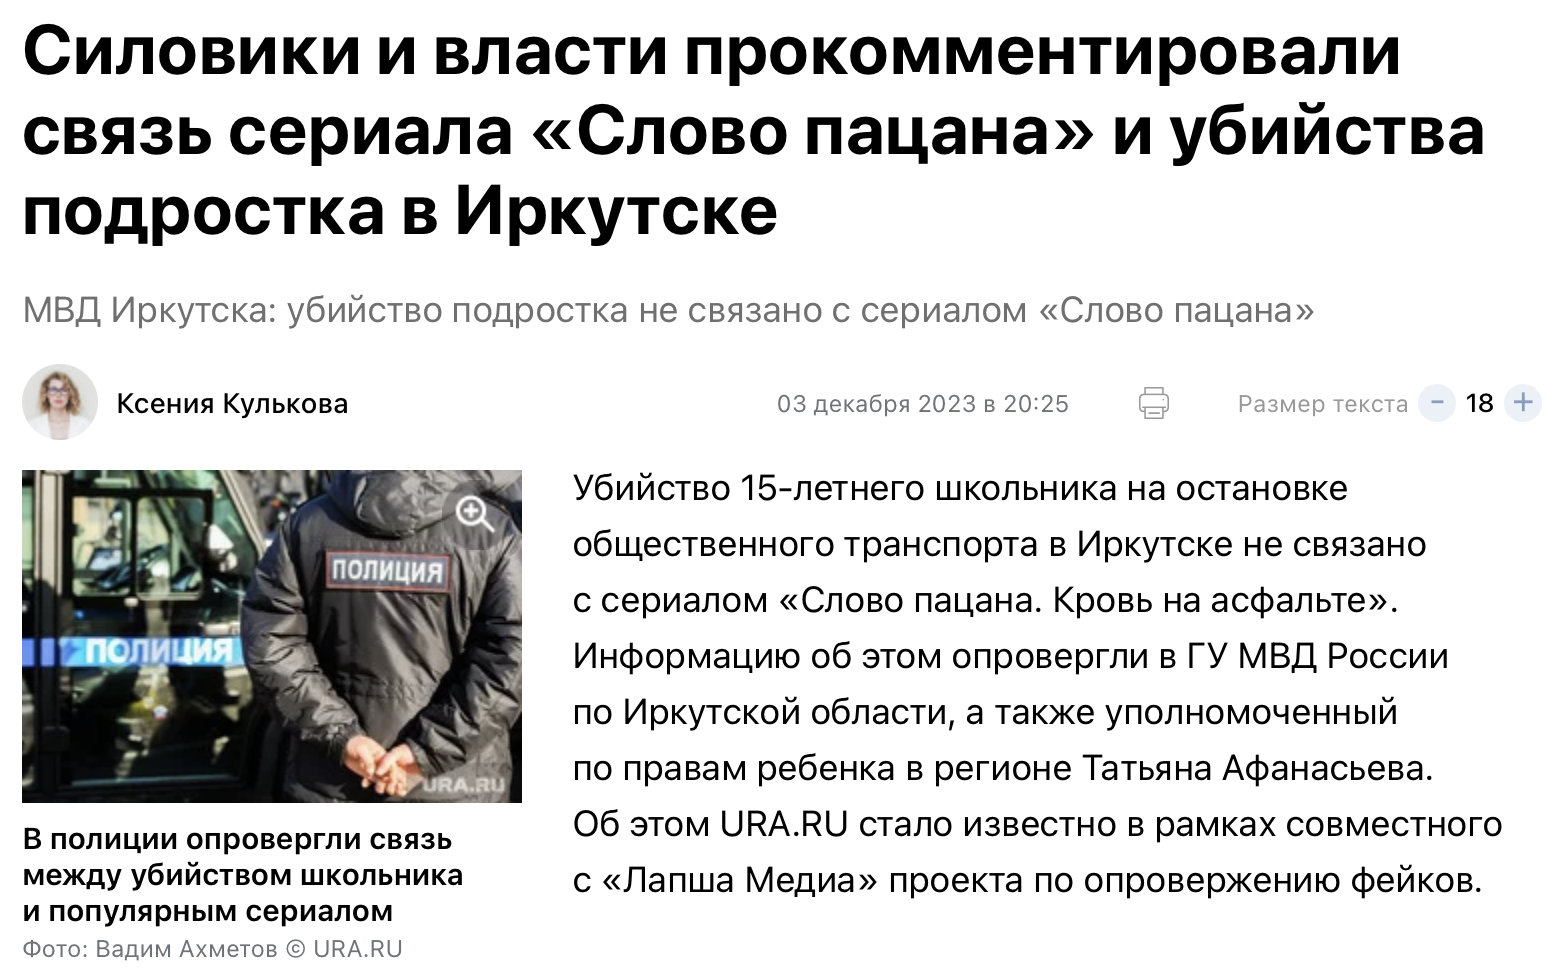 силовики и власти прокомментировали связь сериала Слово пацана и убийства подростка в Иркутске